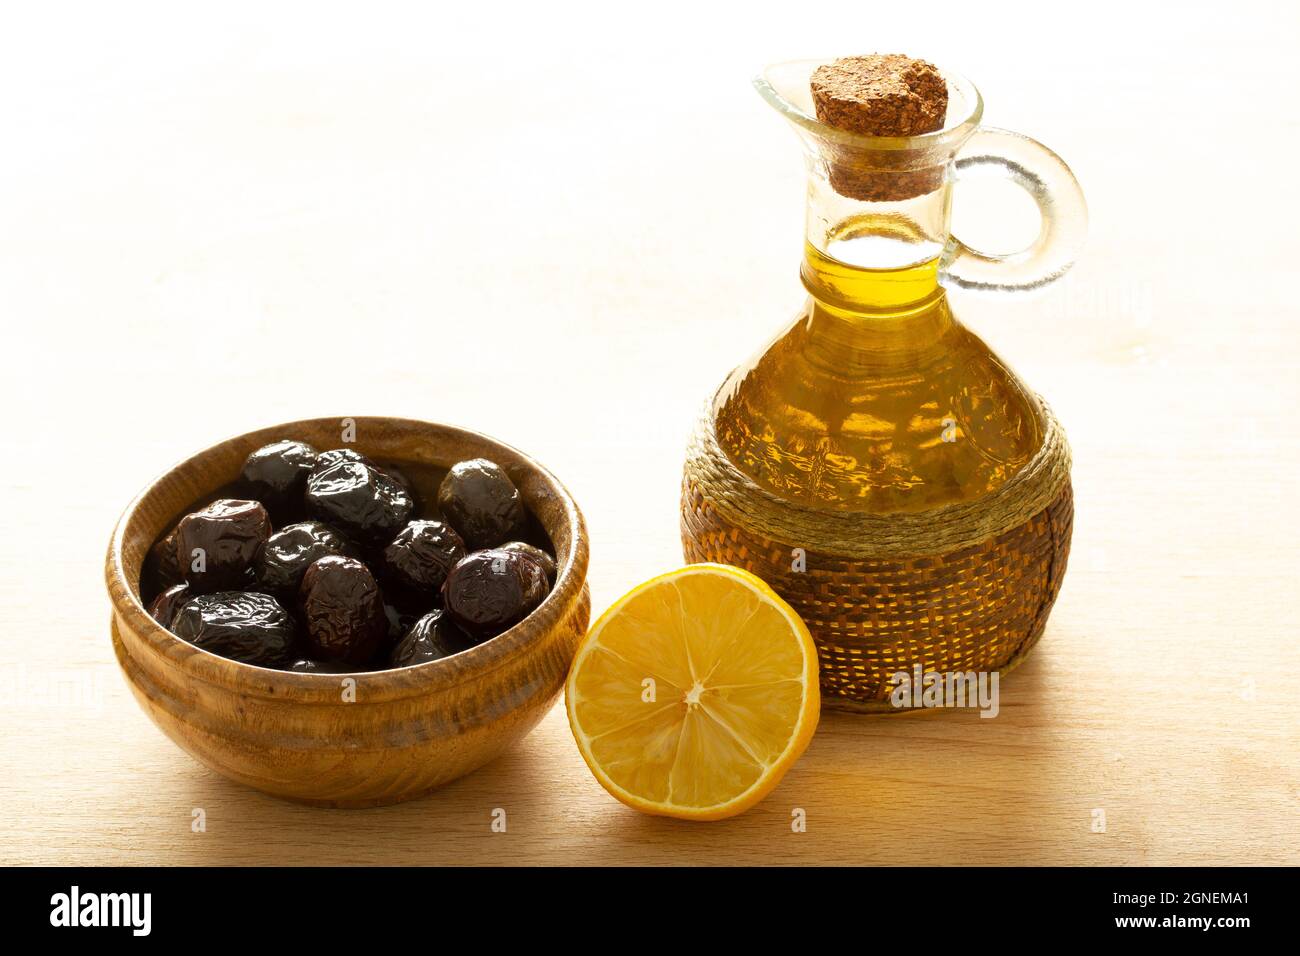 Une assiette d'olives et une tranche de citron. Huile d'olive biologique. Banque D'Images